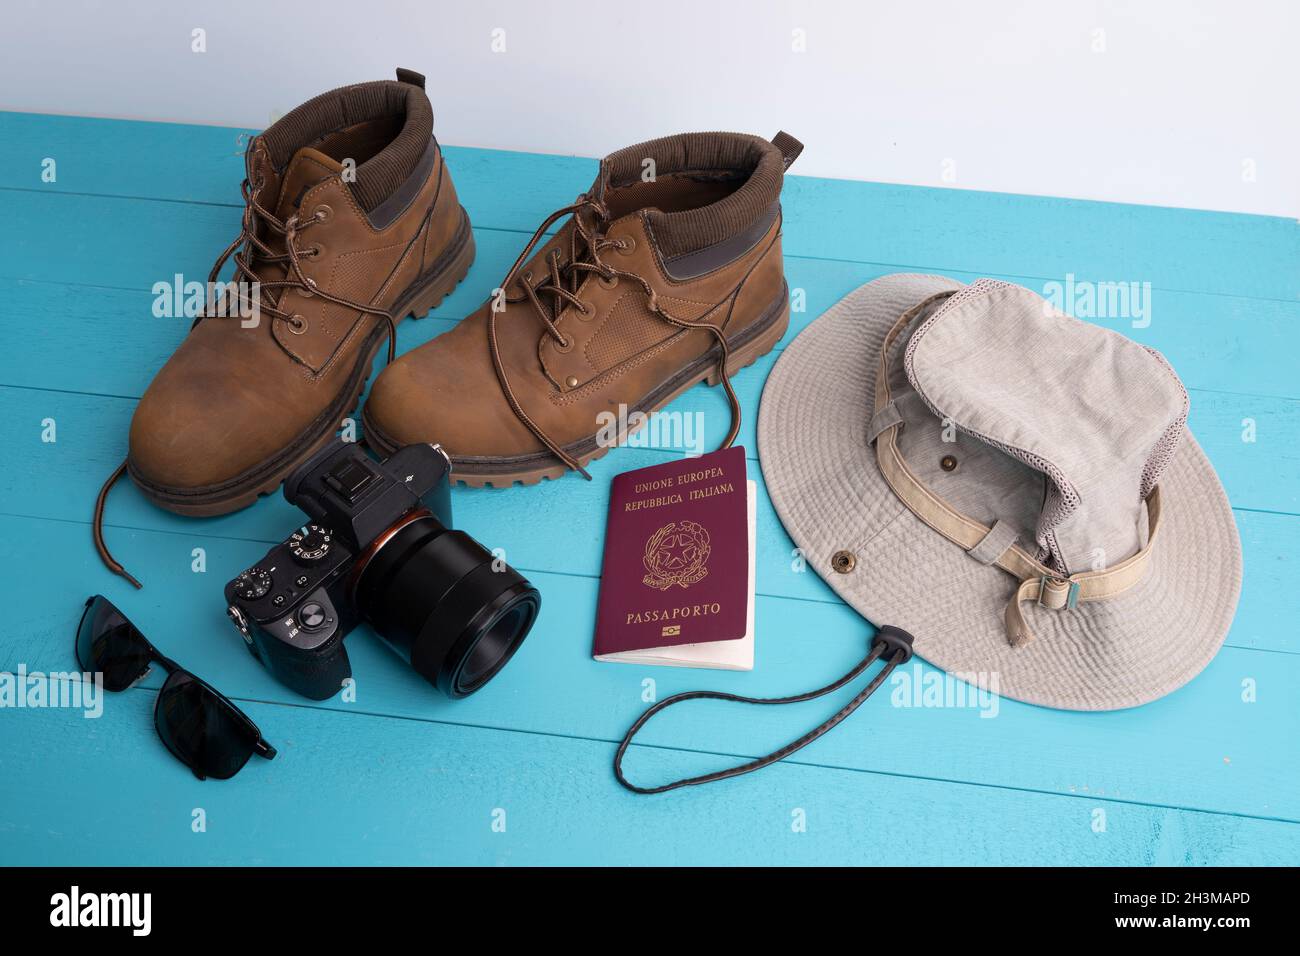 Una macchina fotografica, un cappello e un paio di scarpe su una superficie colorata Foto Stock